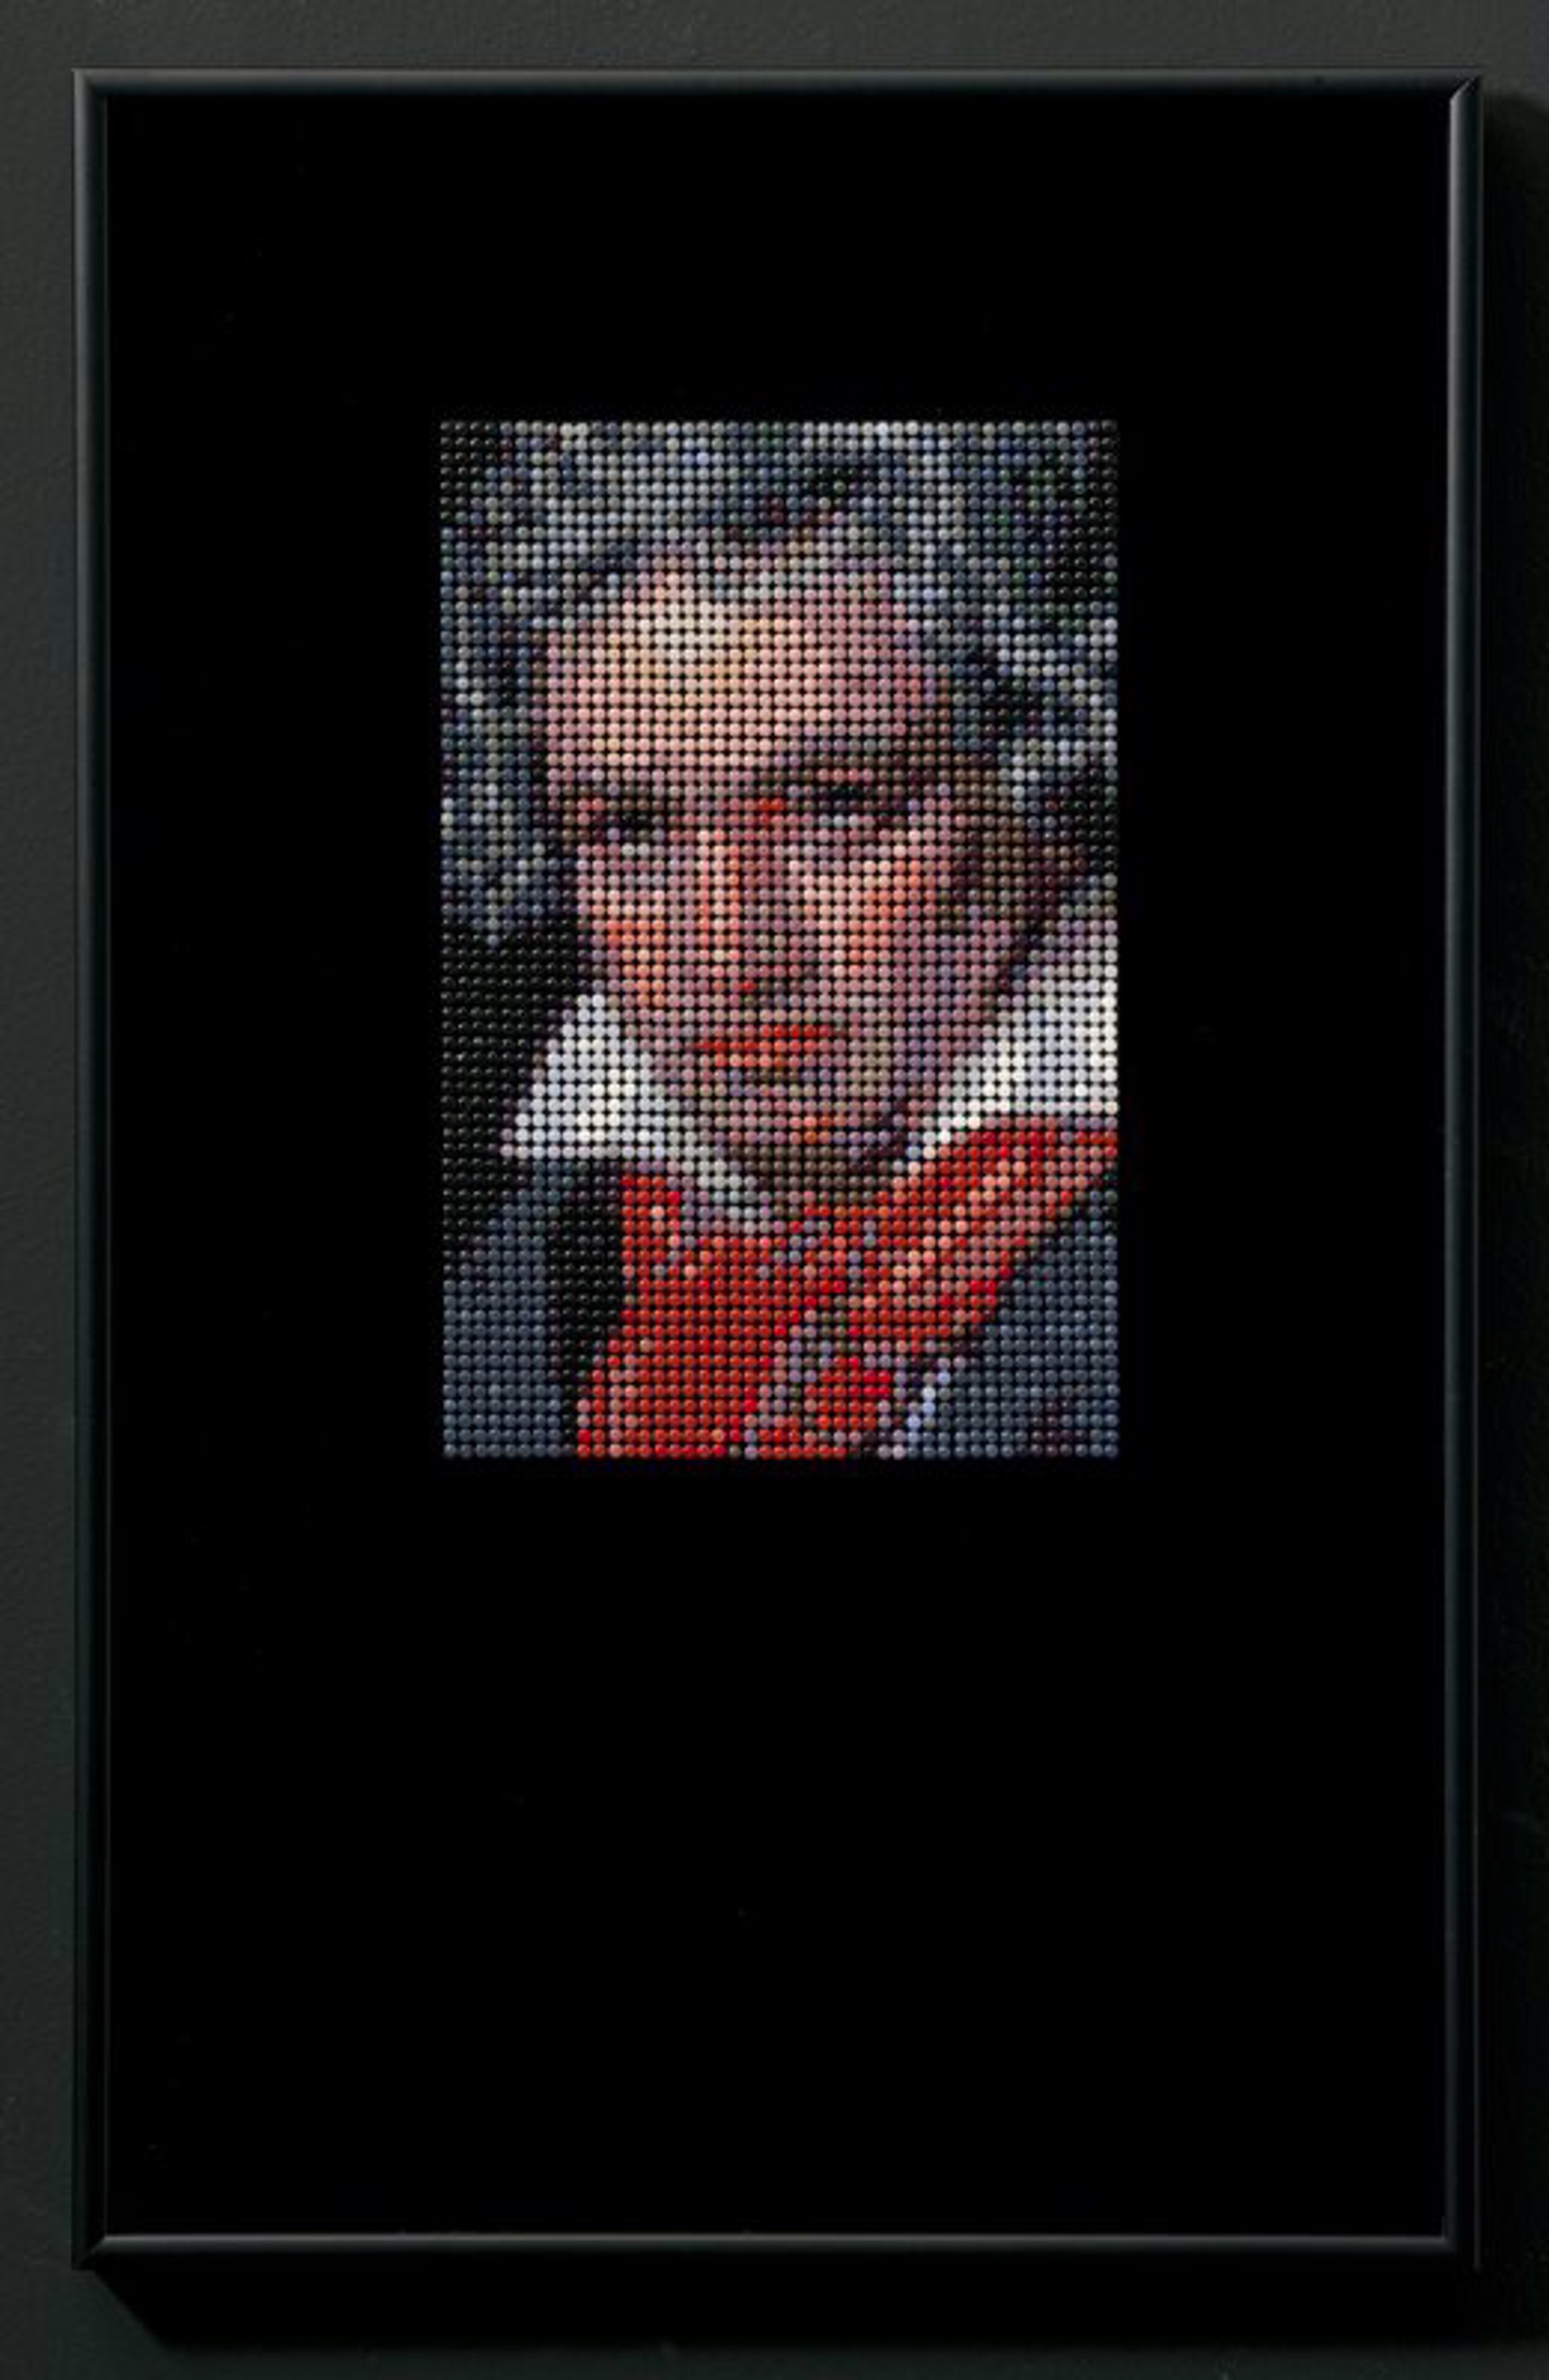 Beethoven, 1820, after Stieler by Veruska Vagen